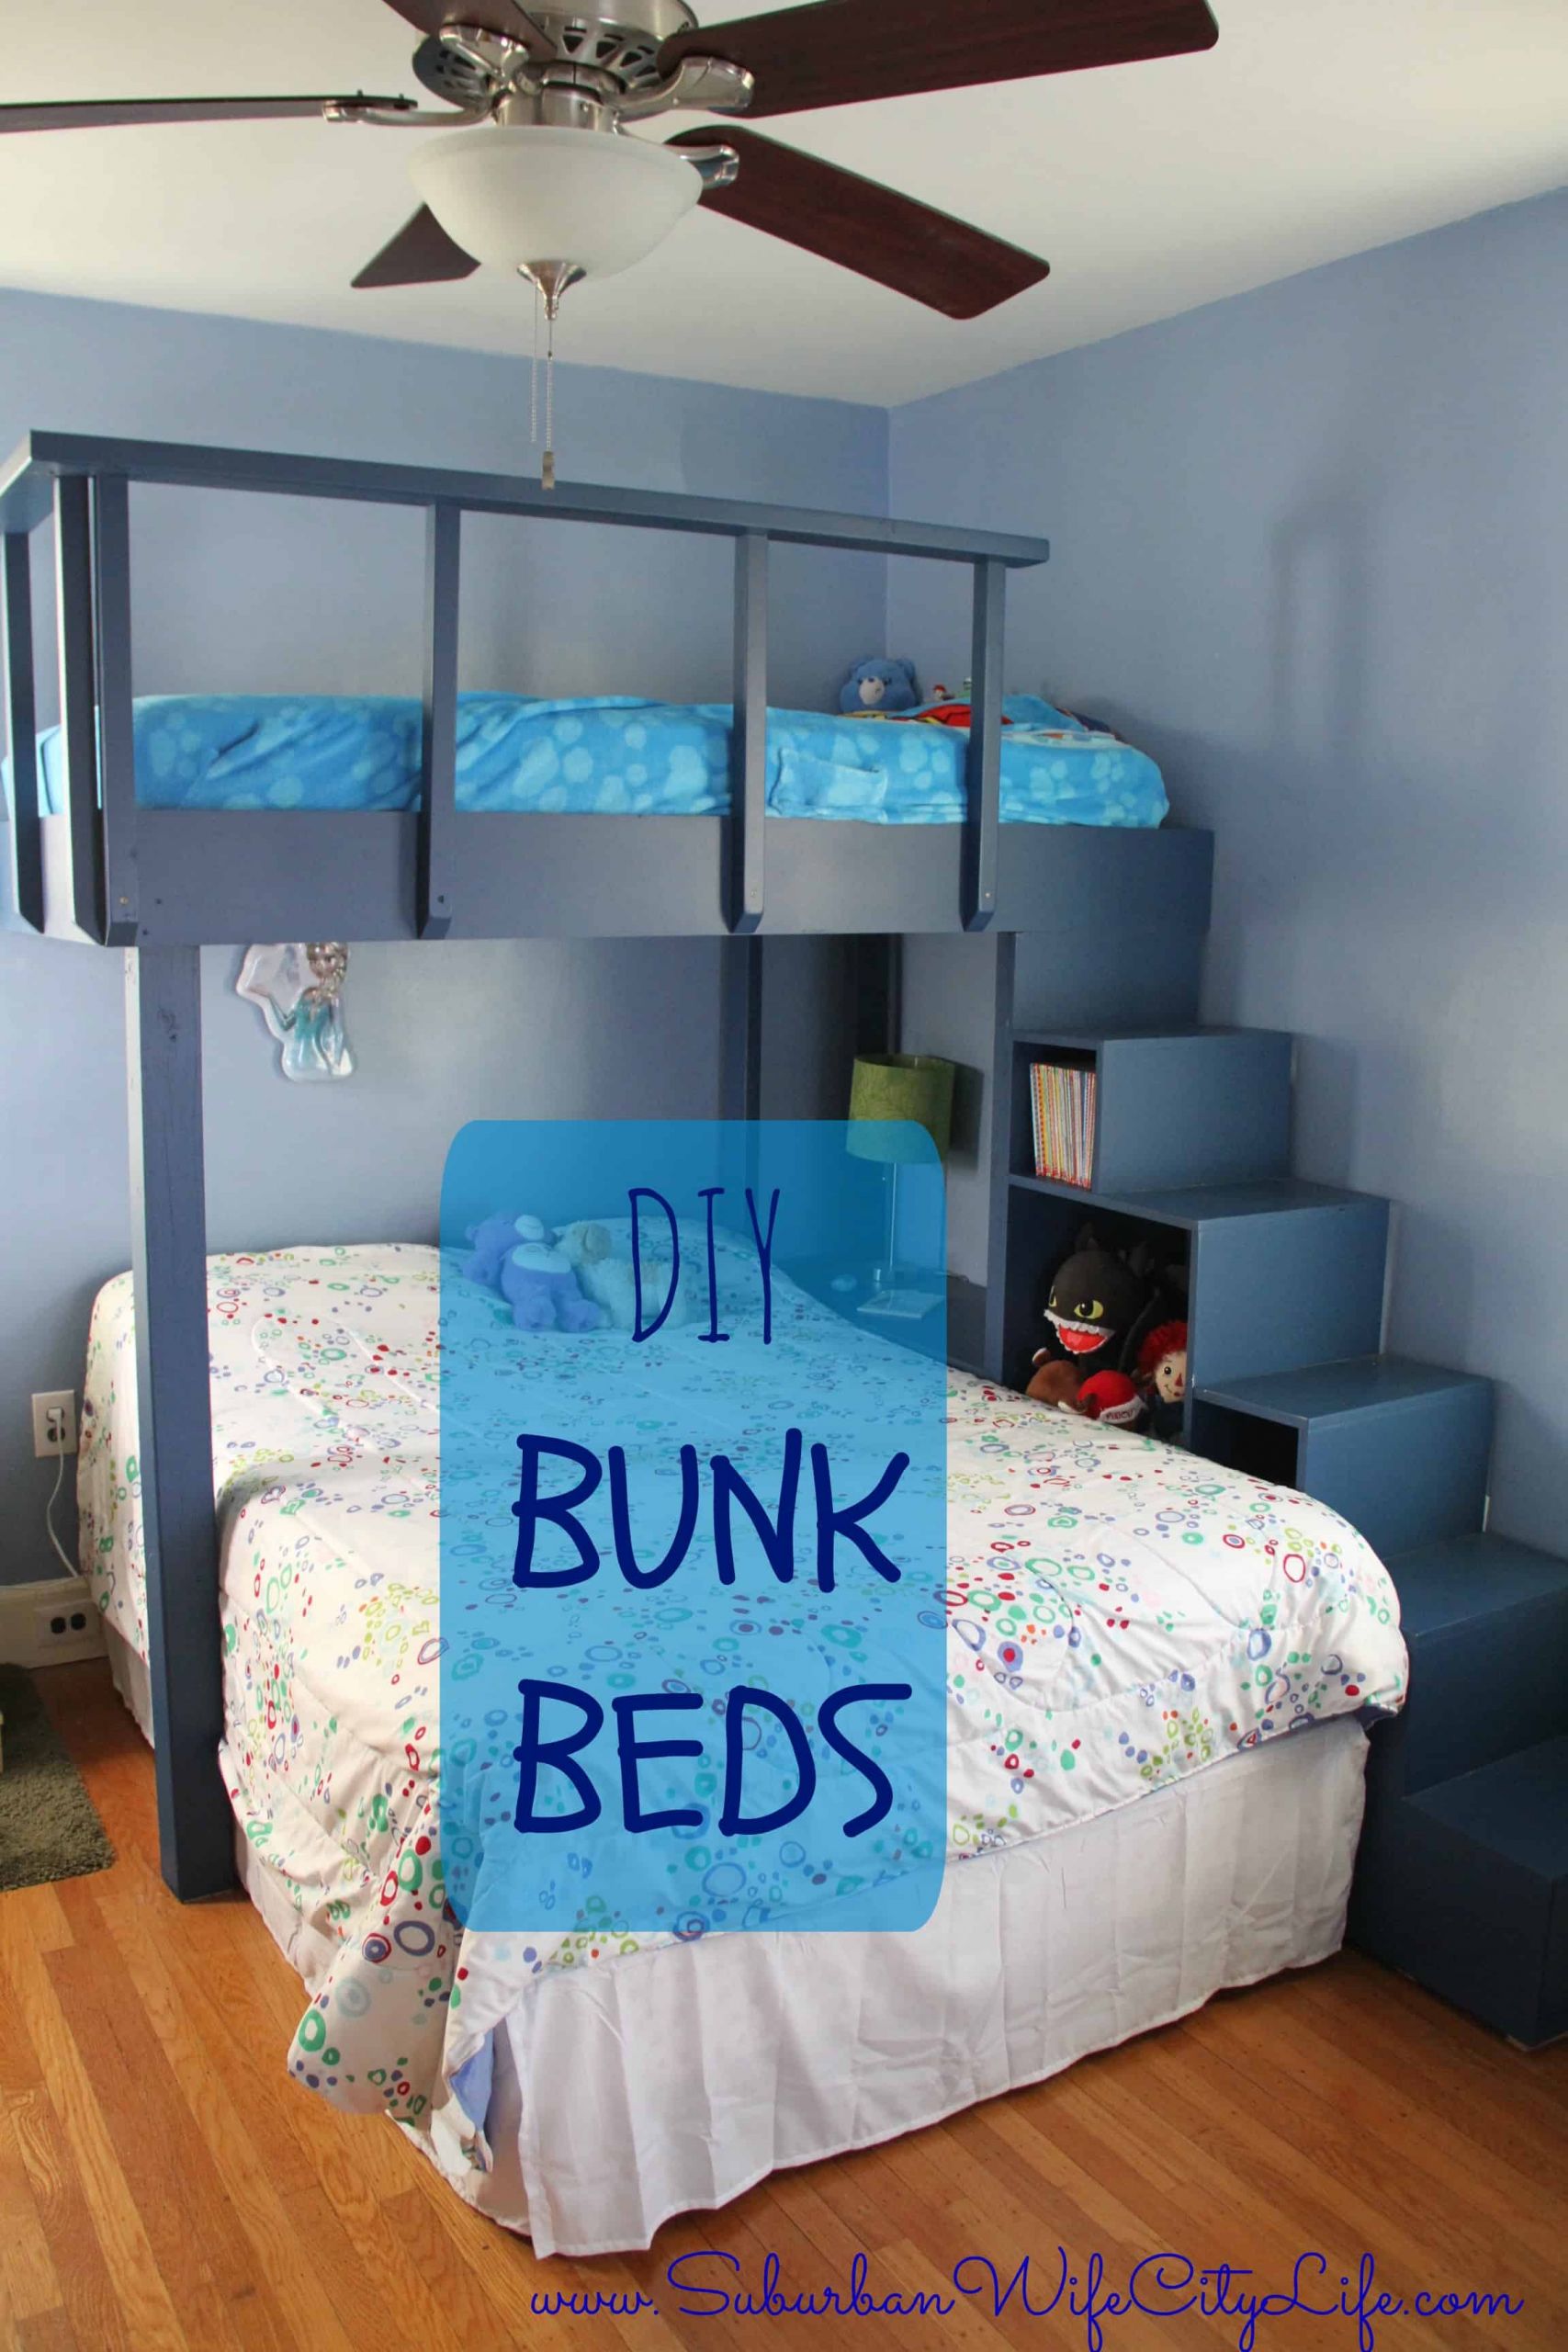 DIY Kids Bunk Beds
 DIY Bunk Beds Suburban Wife City Life